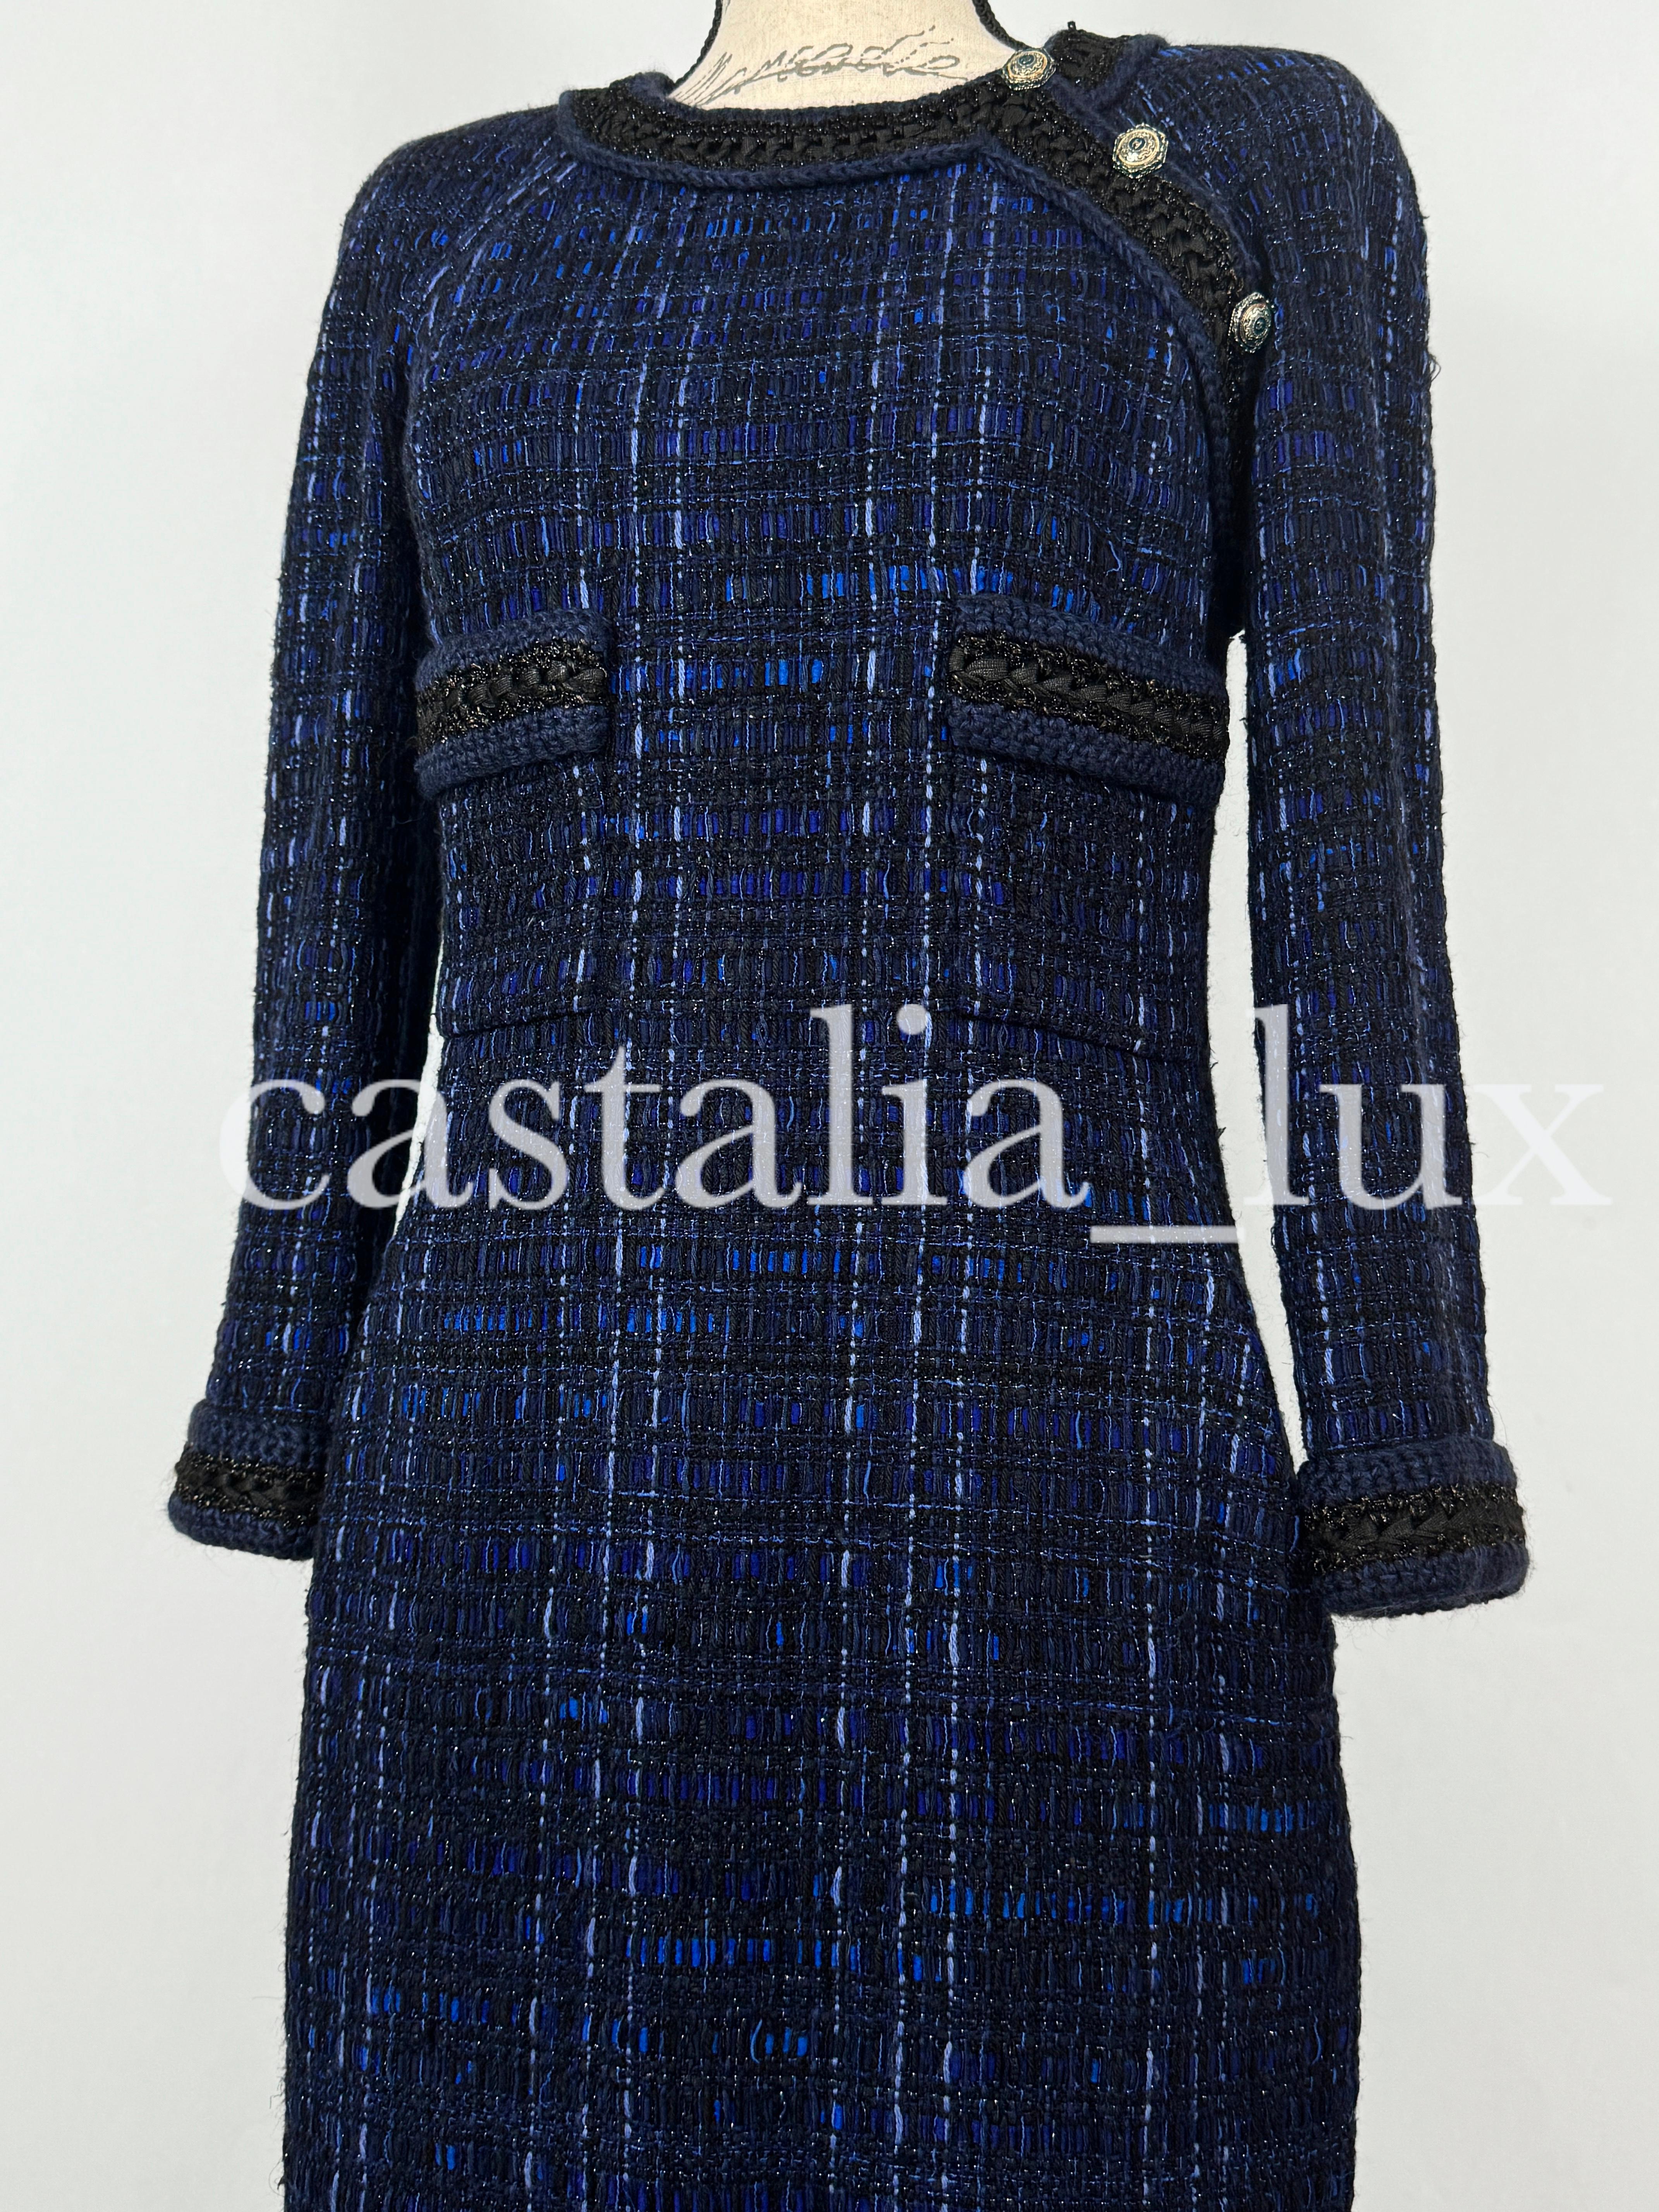 Chanel Atemberaubendes CC Sechseckige Knöpfe Lesage Tweed Kleid 9